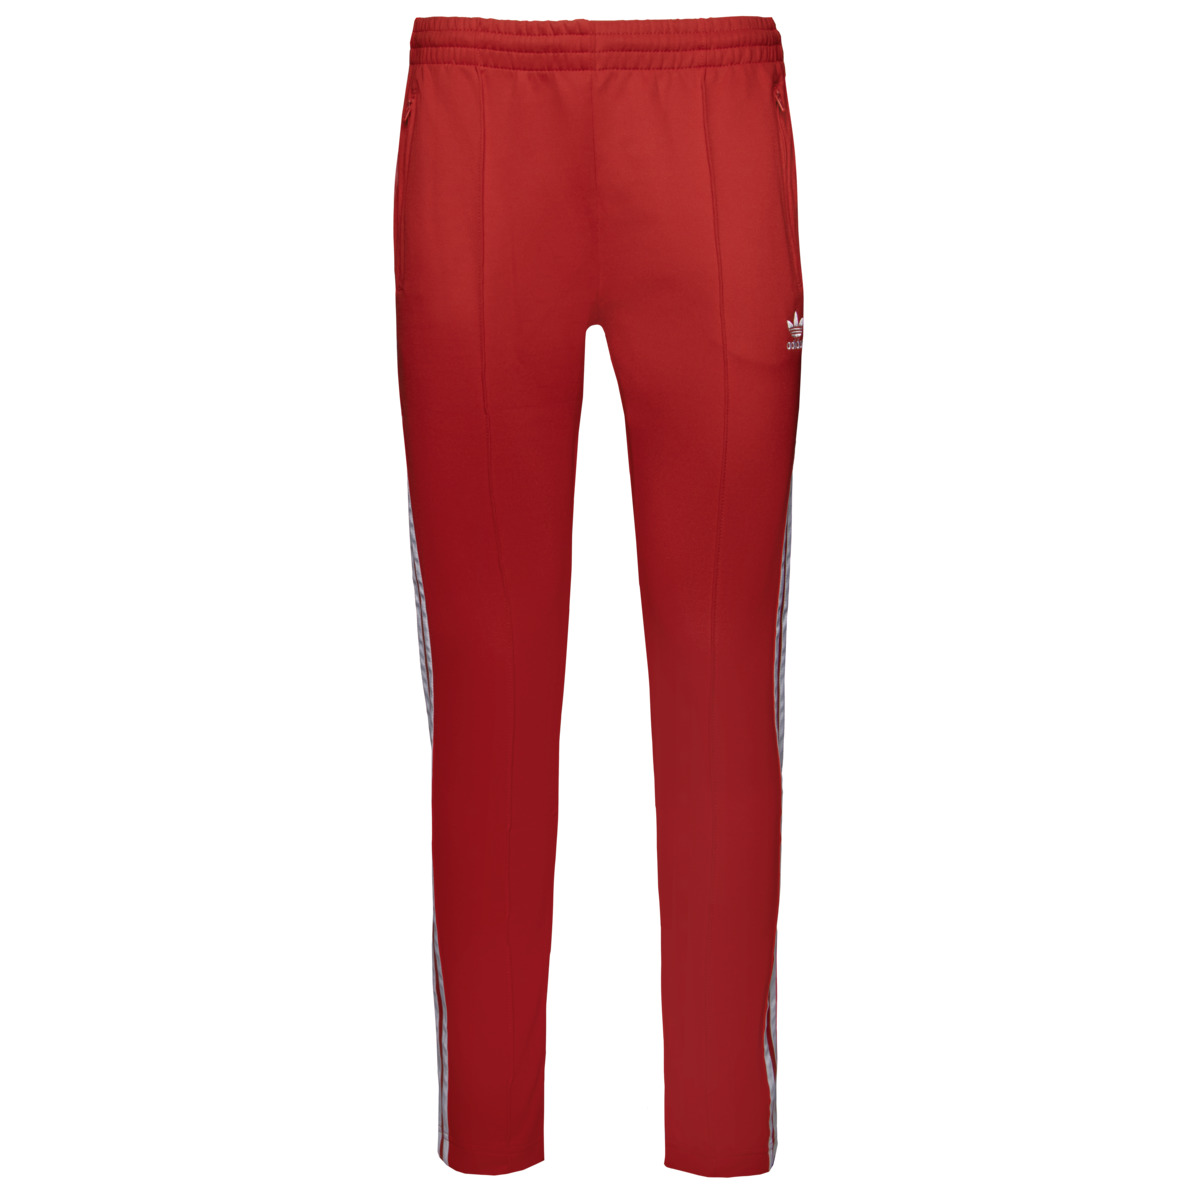 Спортивные брюки Adidas originals Primeblue SST, красный